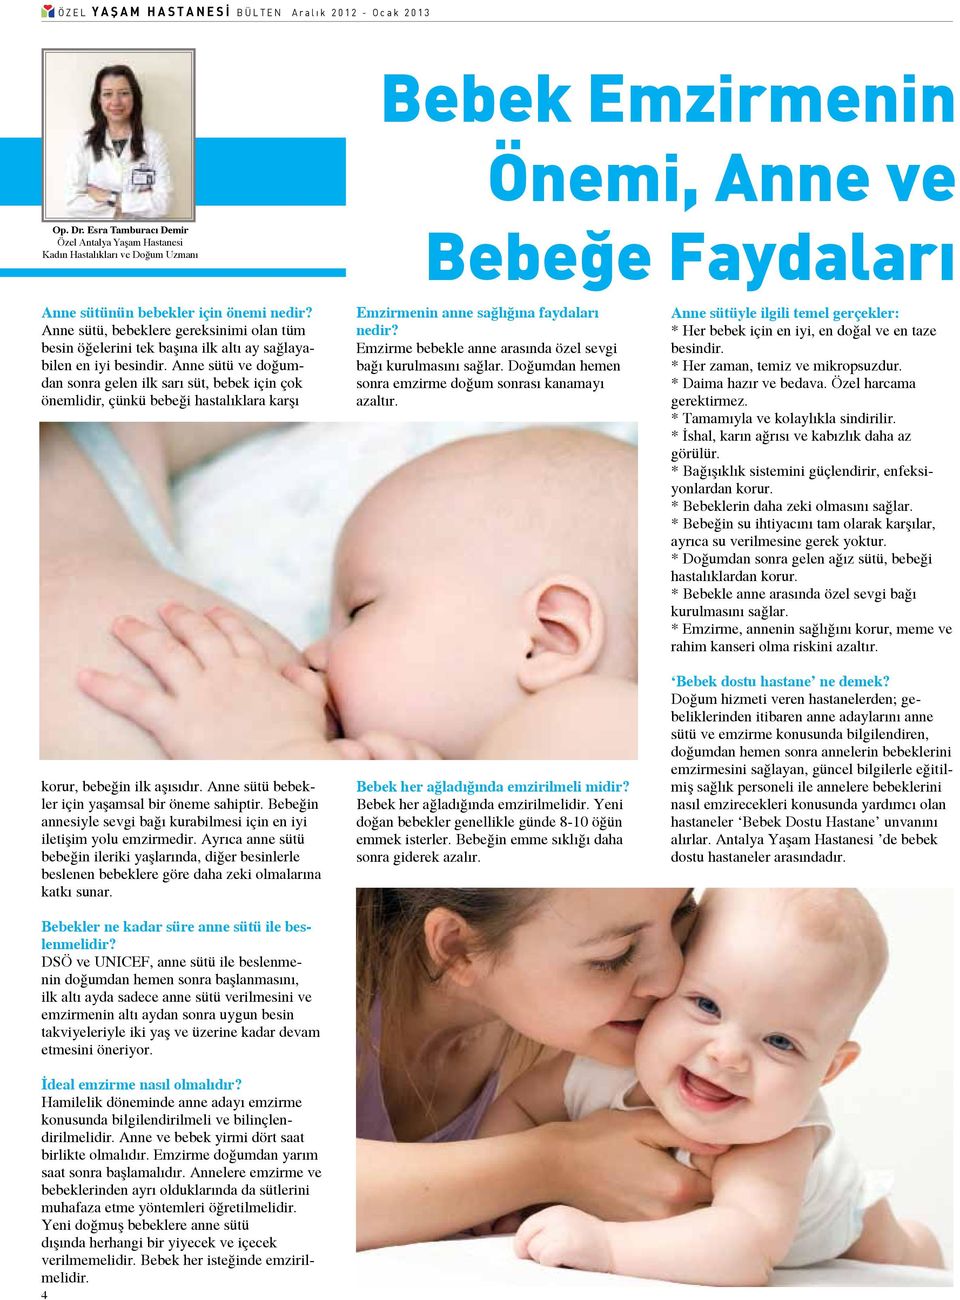 Anne sütü ve doğumdan sonra gelen ilk sarı süt, bebek için çok önemlidir, çünkü bebeği hastalıklara karşı korur, bebeğin ilk aşısıdır. Anne sütü bebekler için yaşamsal bir öneme sahiptir.